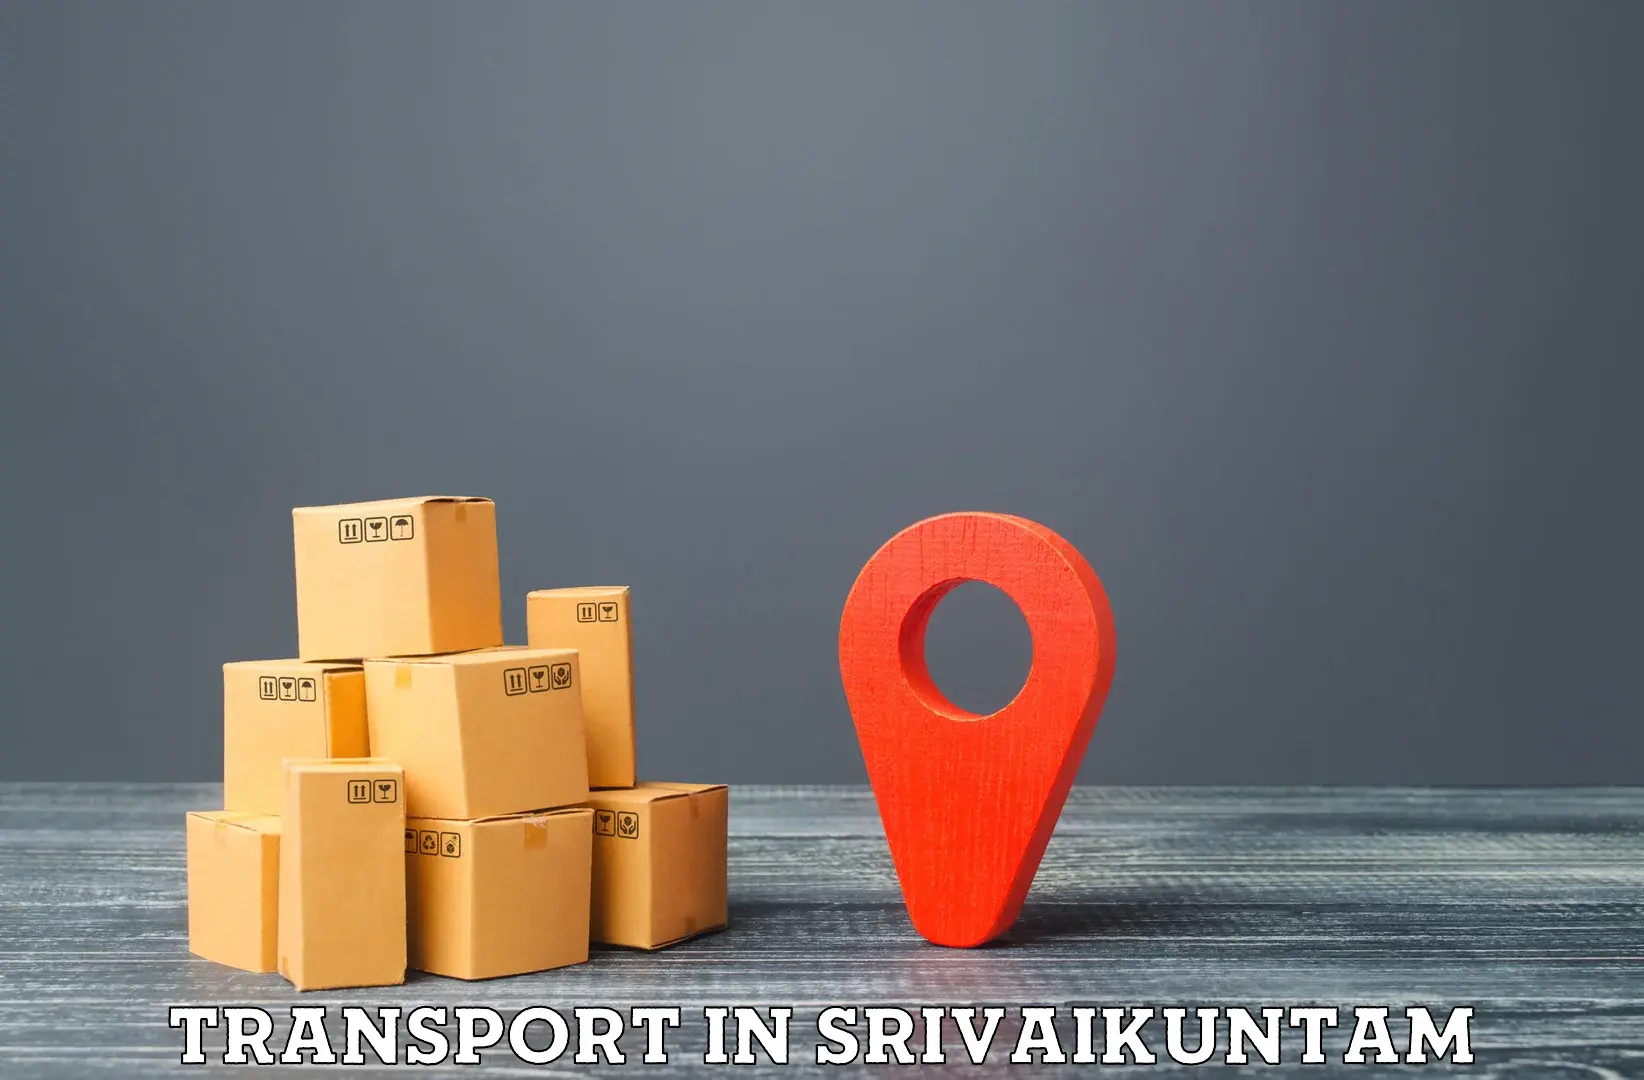 Inland transportation services in Srivaikuntam